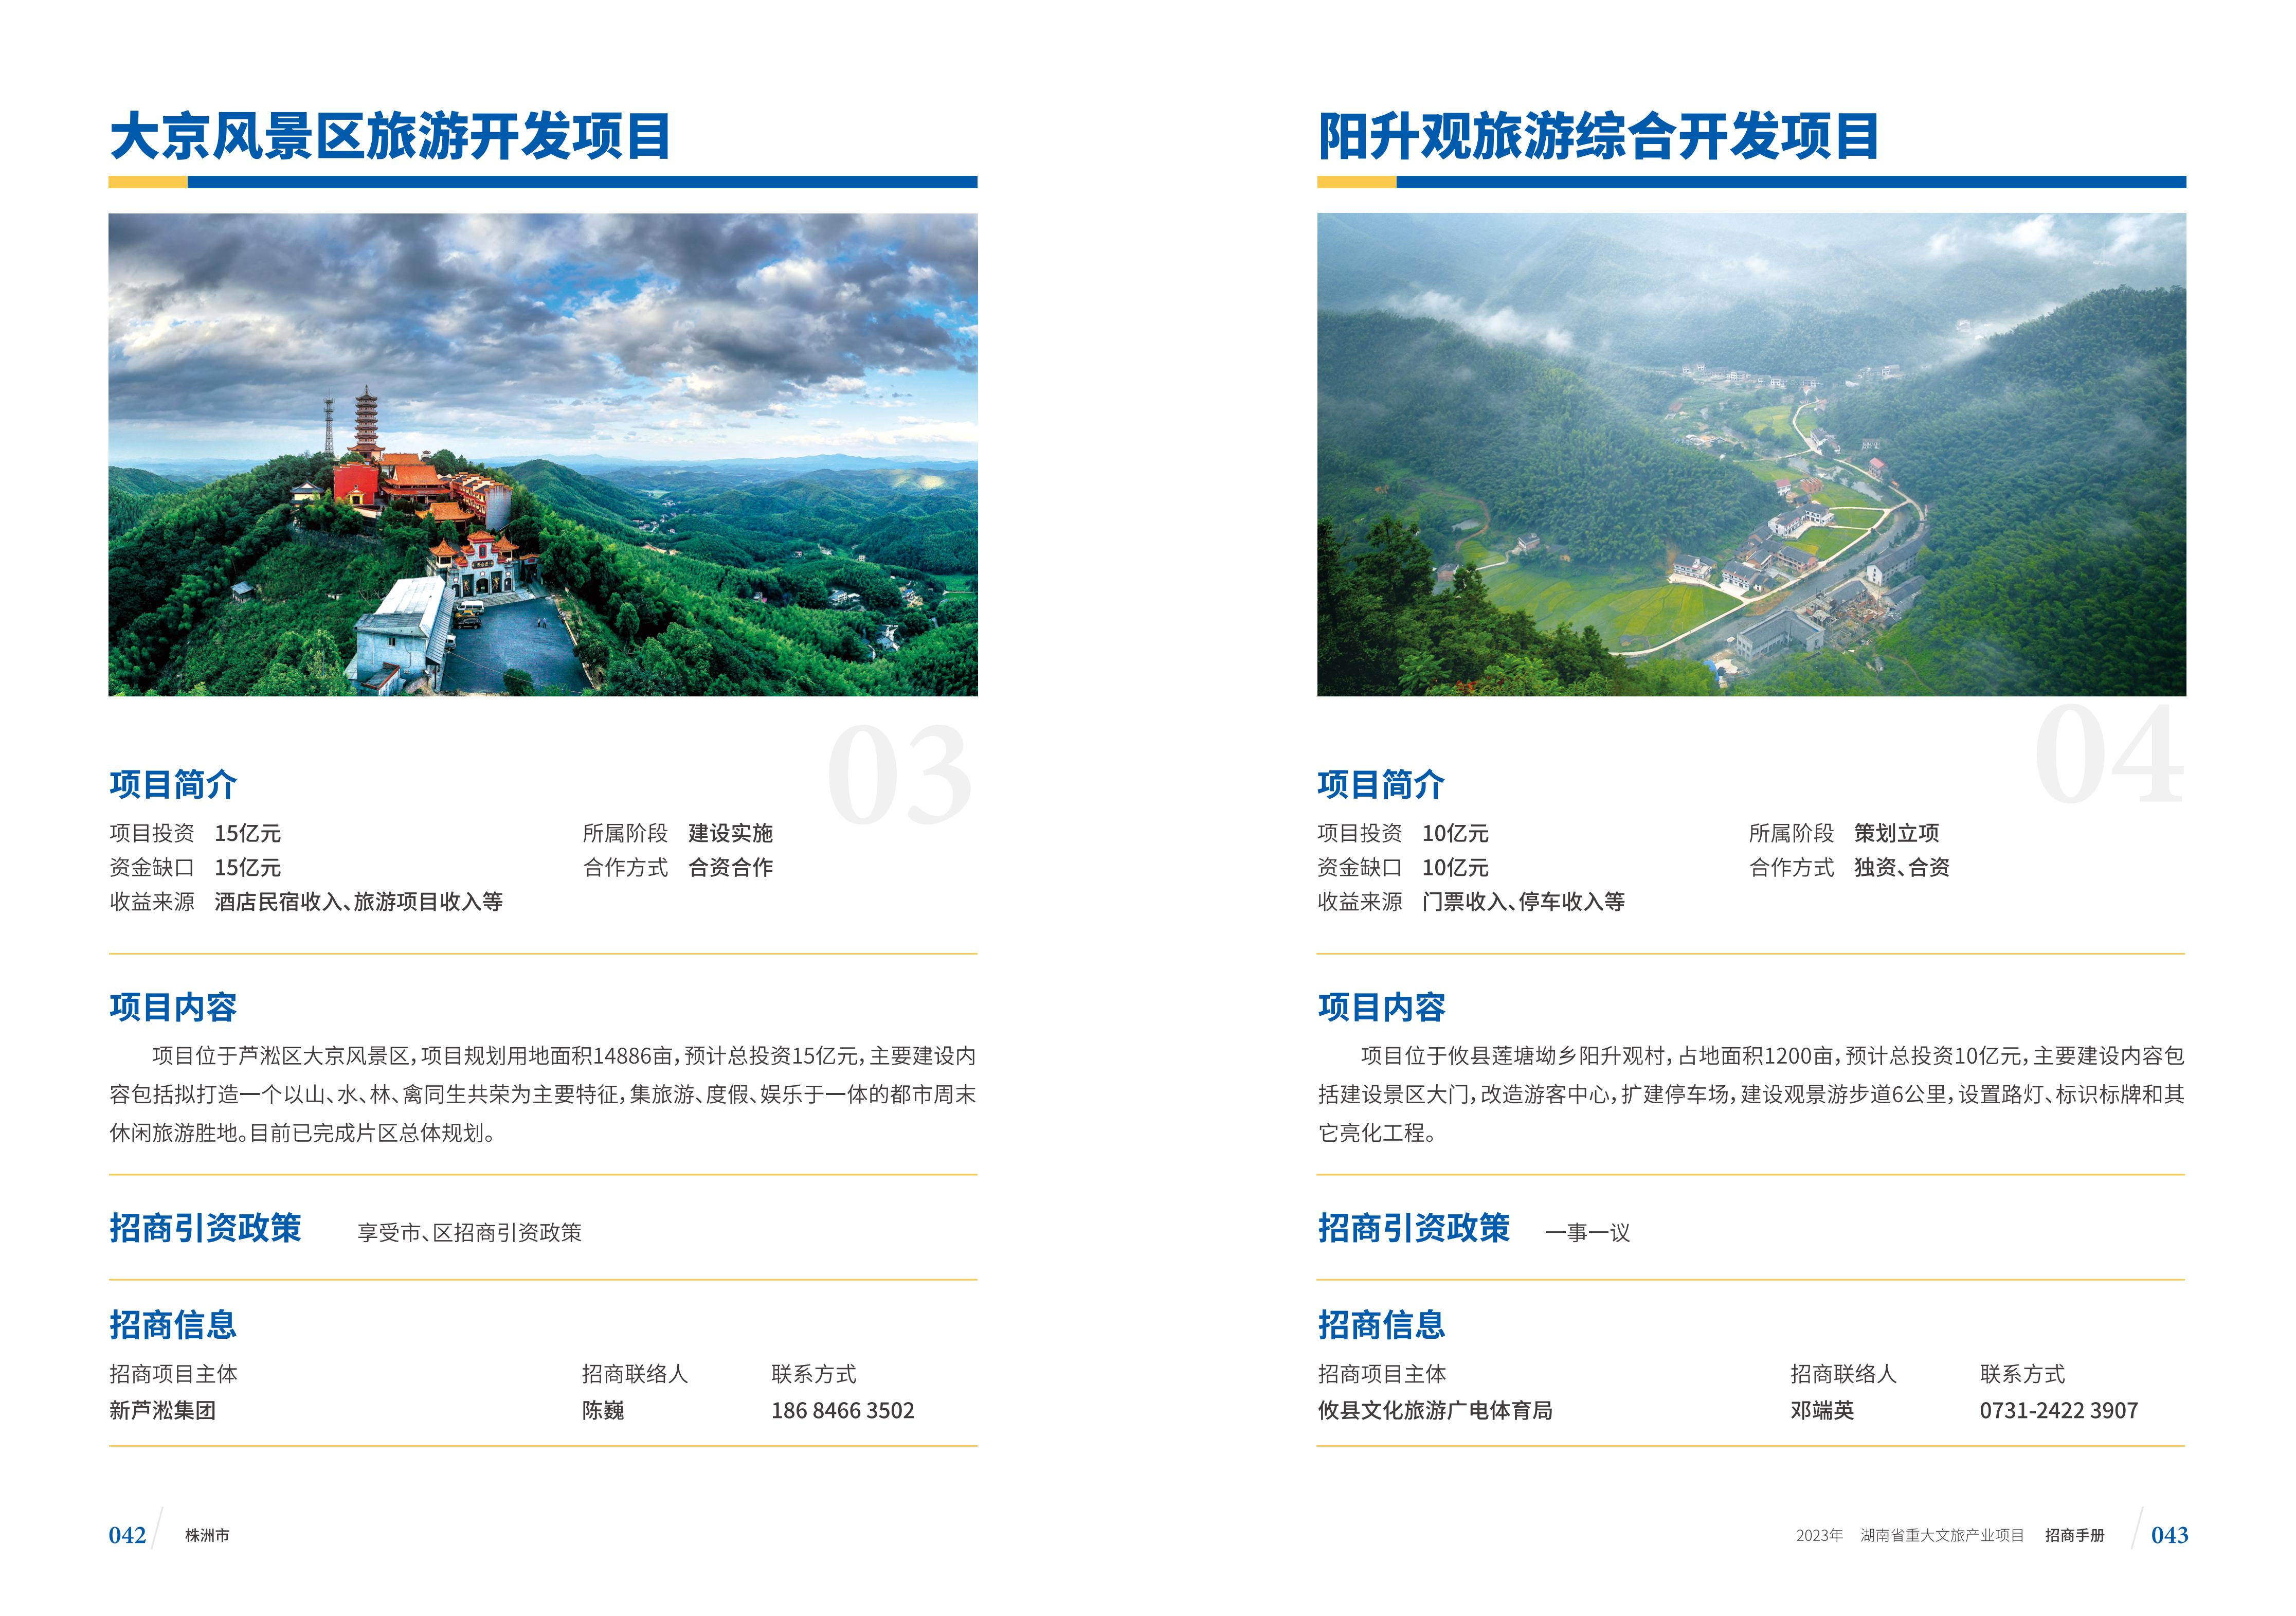 湖南省重大文旅产业项目招手册线上链接版_29.jpg